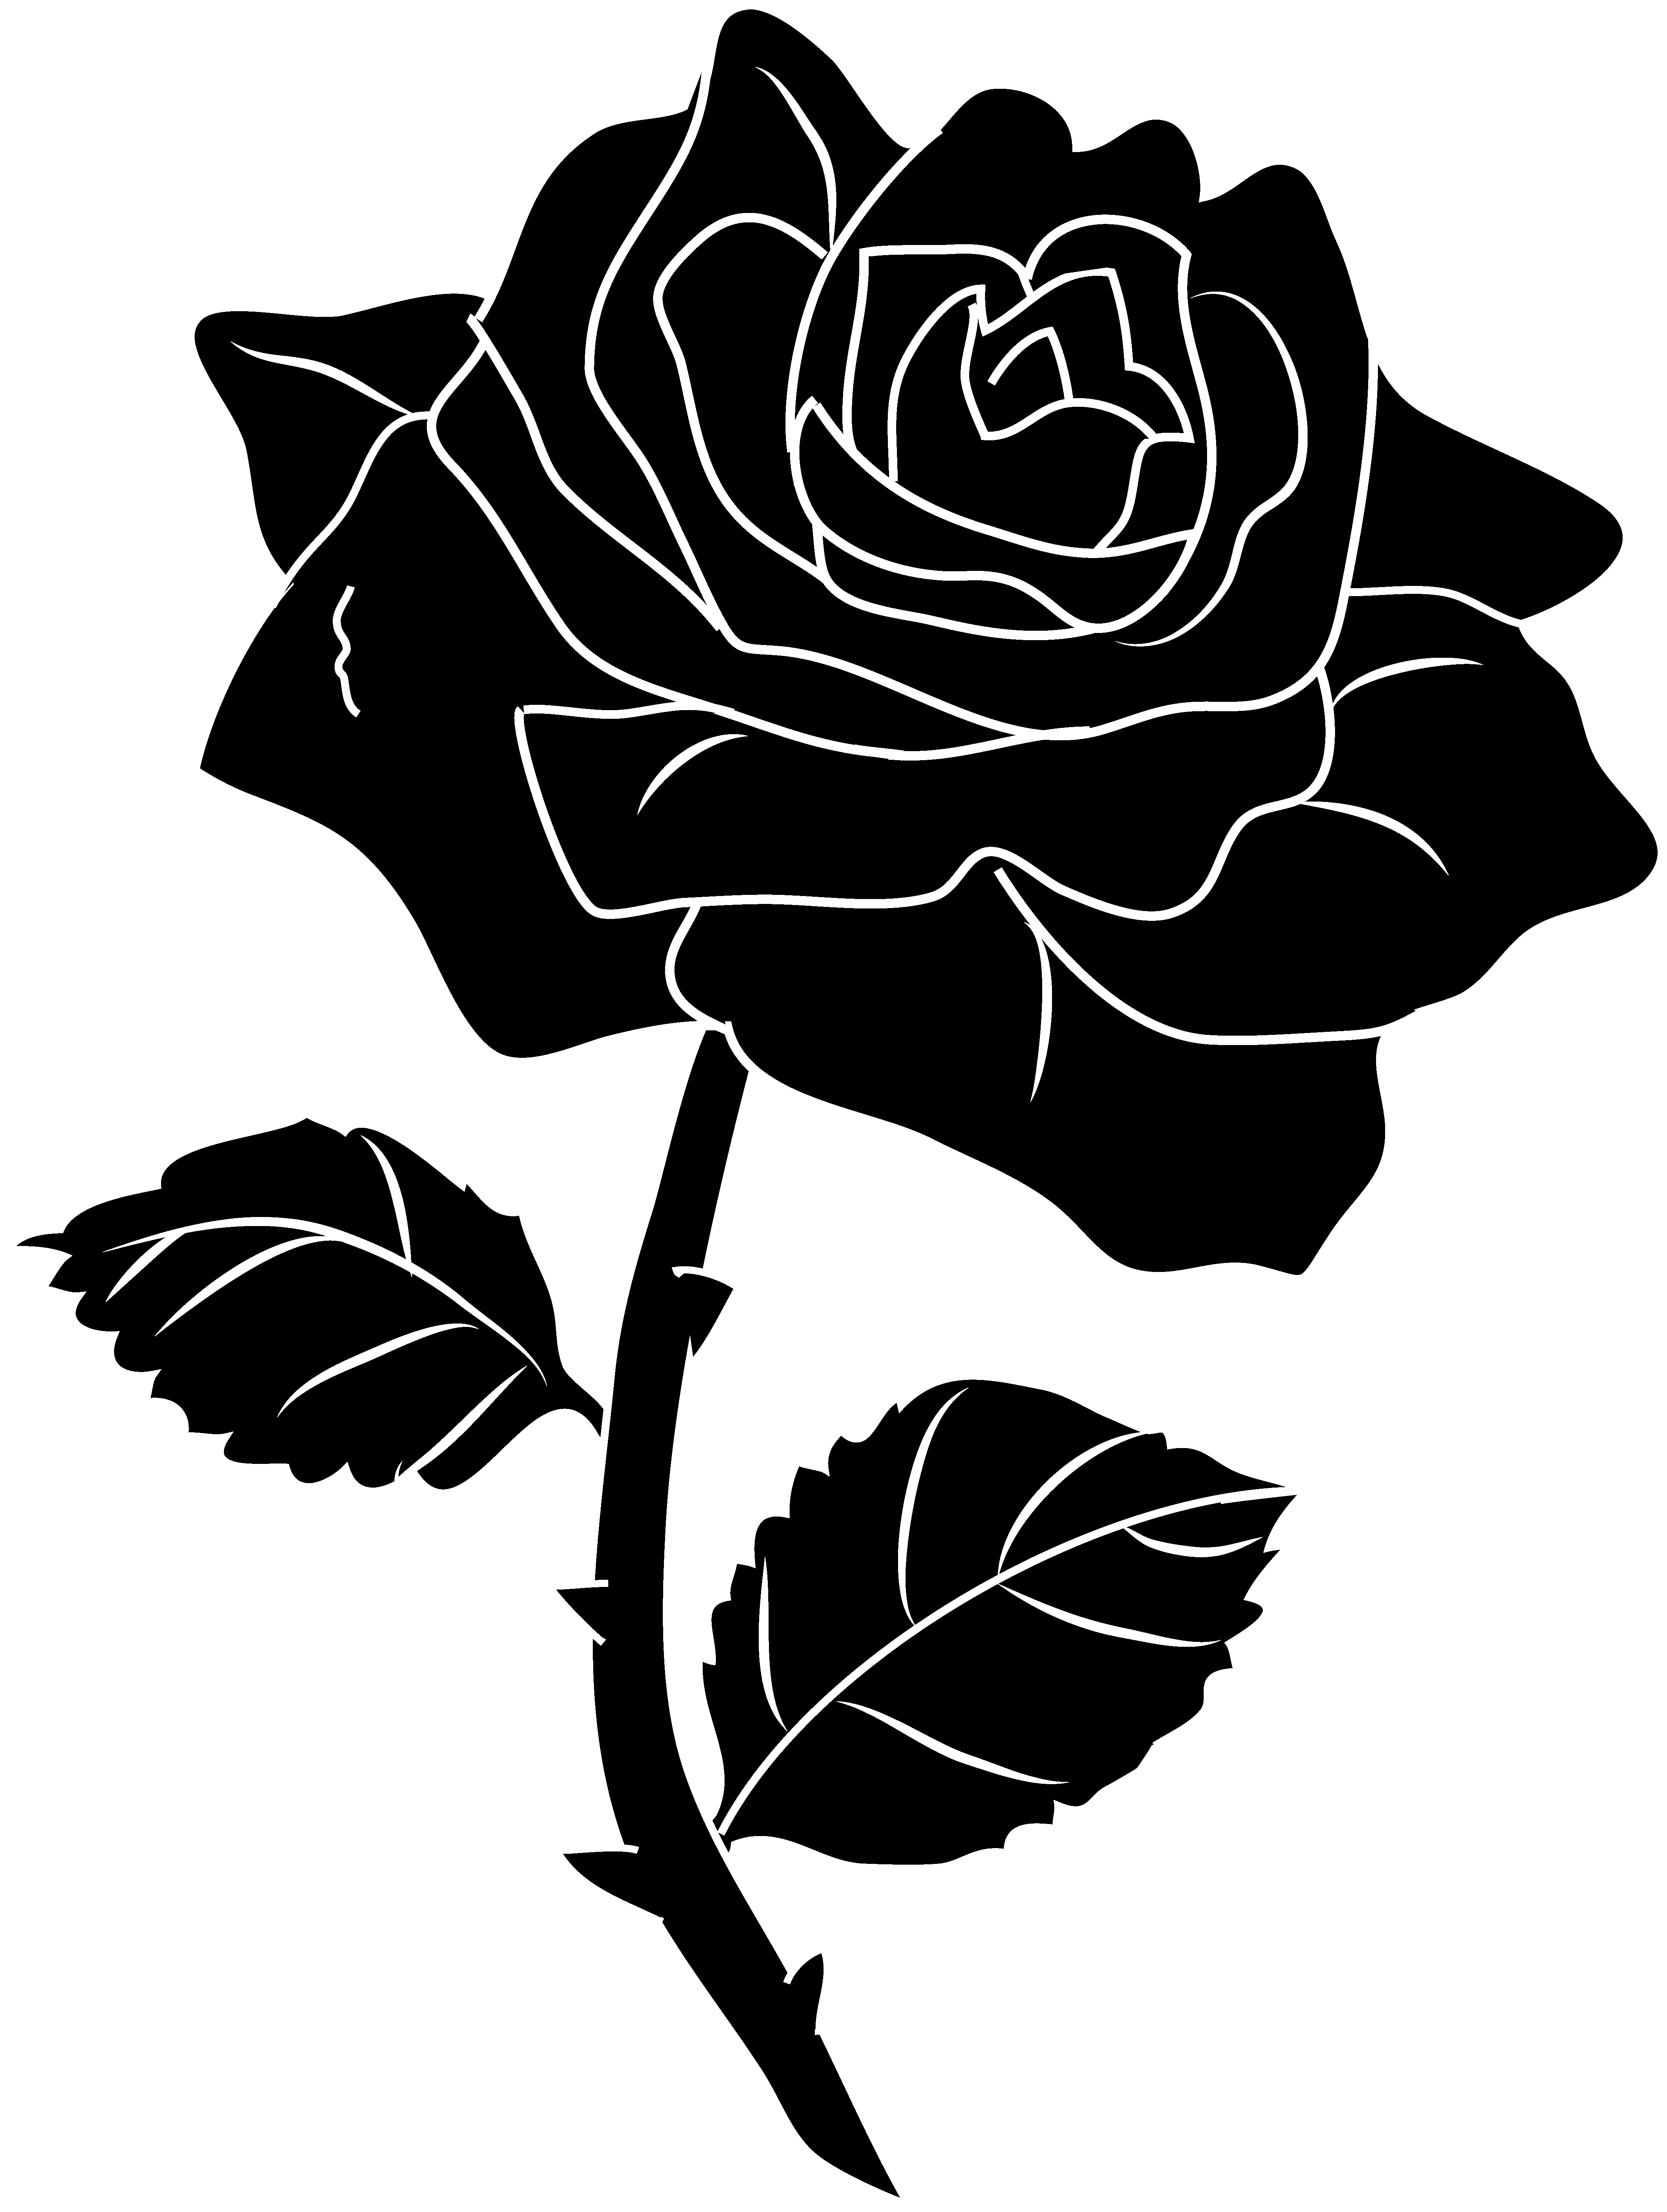 Rose Black And White Outline 